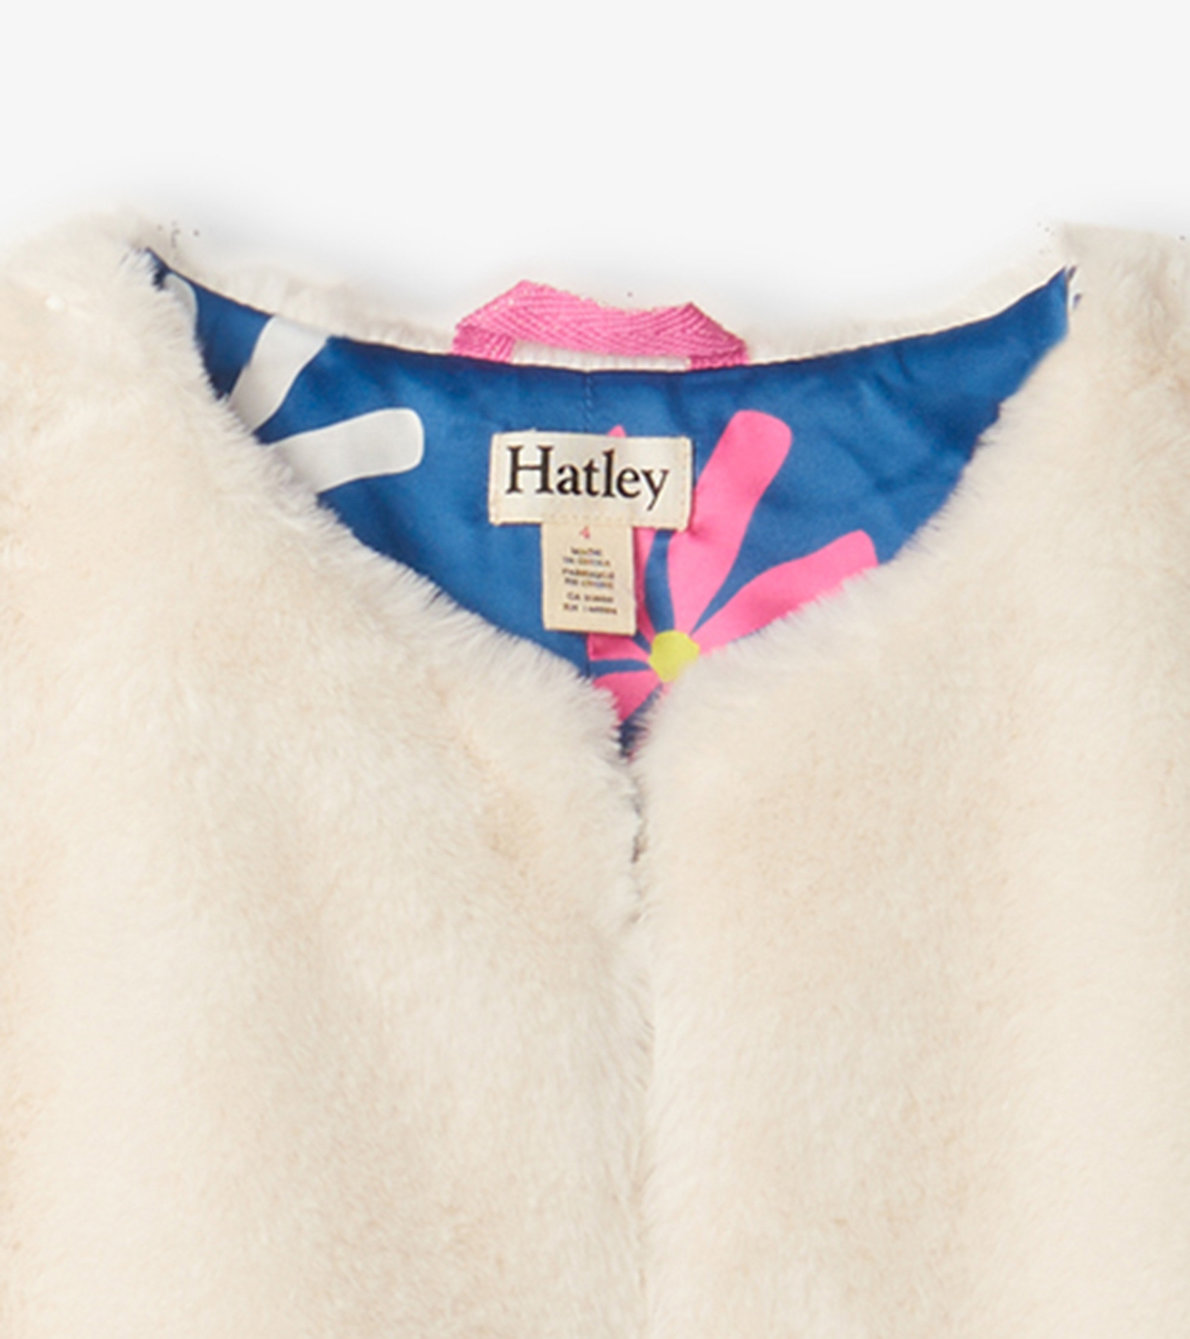 View larger image of Girls Sheer Pink Faux Fur Jacket